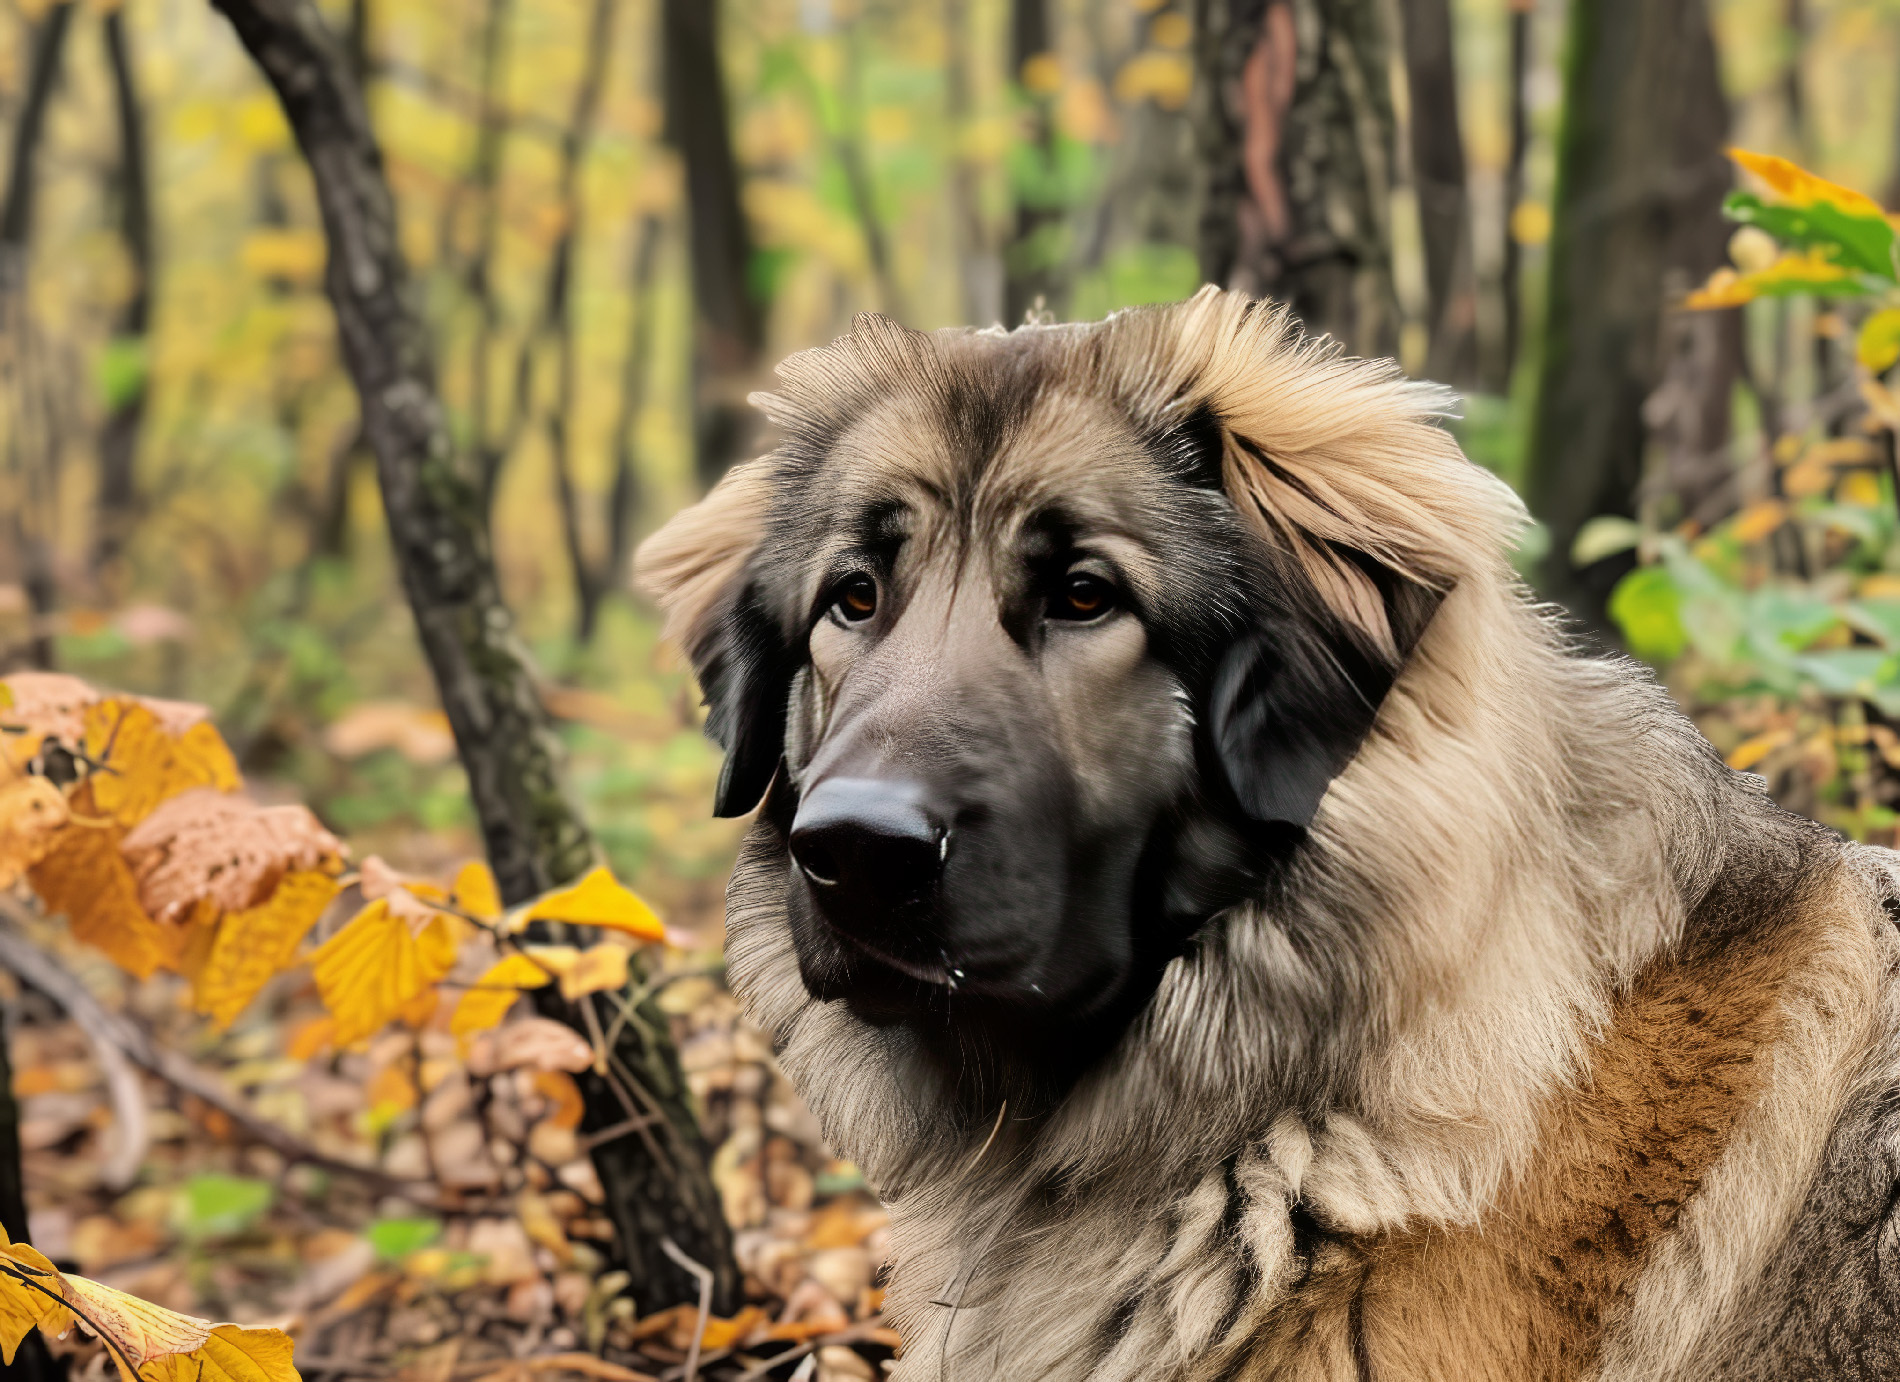 Der imposante Kaukasische Owtscharka, ein wahrer Riese unter den Hunden, steht würdevoll in seiner natürlichen Umgebung, stets bereit, seine Familie mit Mut und Entschlossenheit zu beschützen (Foto: Mid).